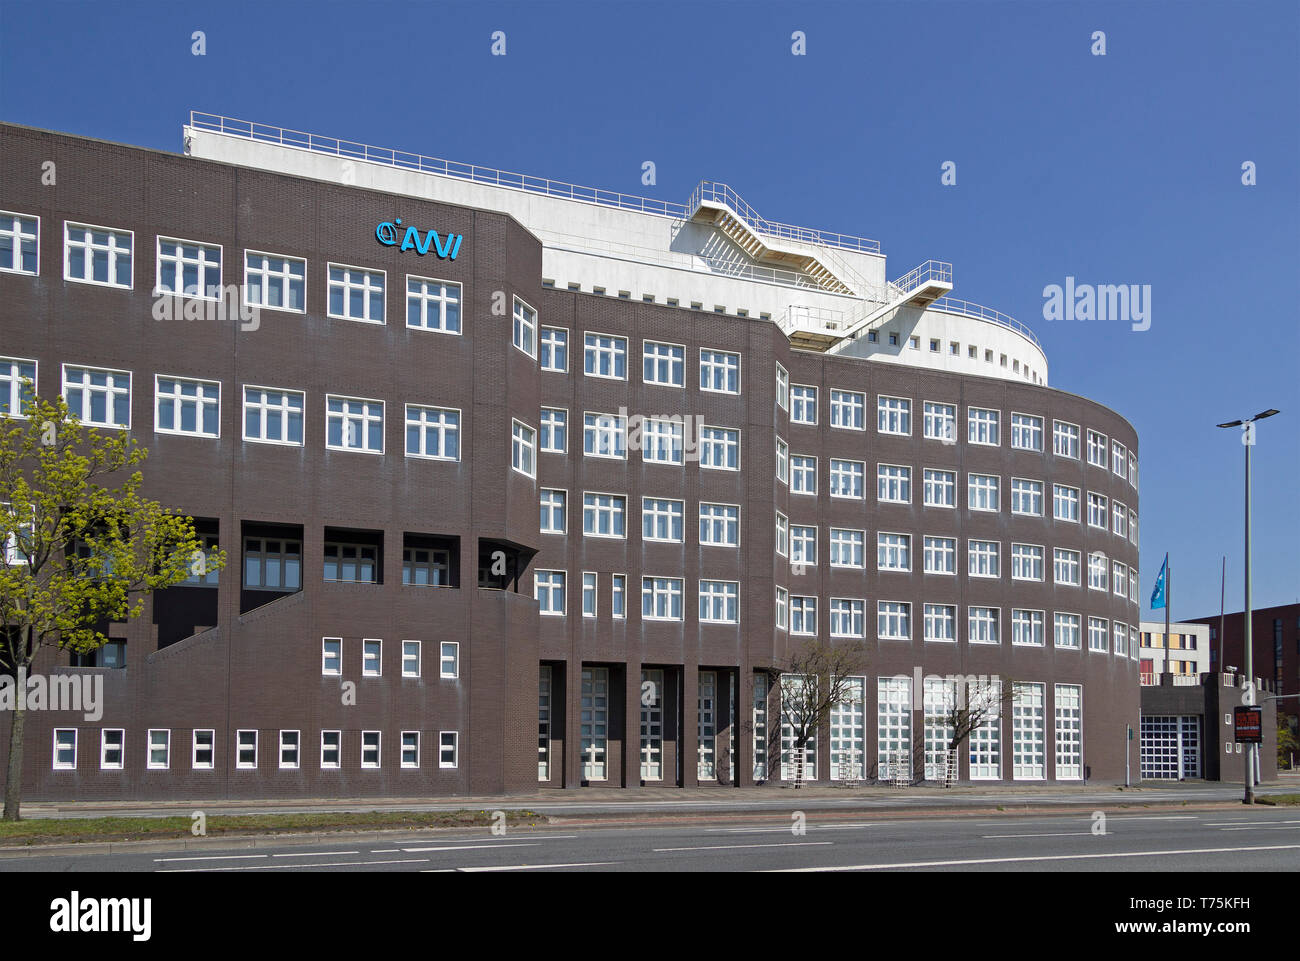 Alfred-wegener-Institut, Helmholtz-Zentrum für Polar- und Meeresforschung (AWI), Bremerhaven, Bremen, Deutschland Stockfoto